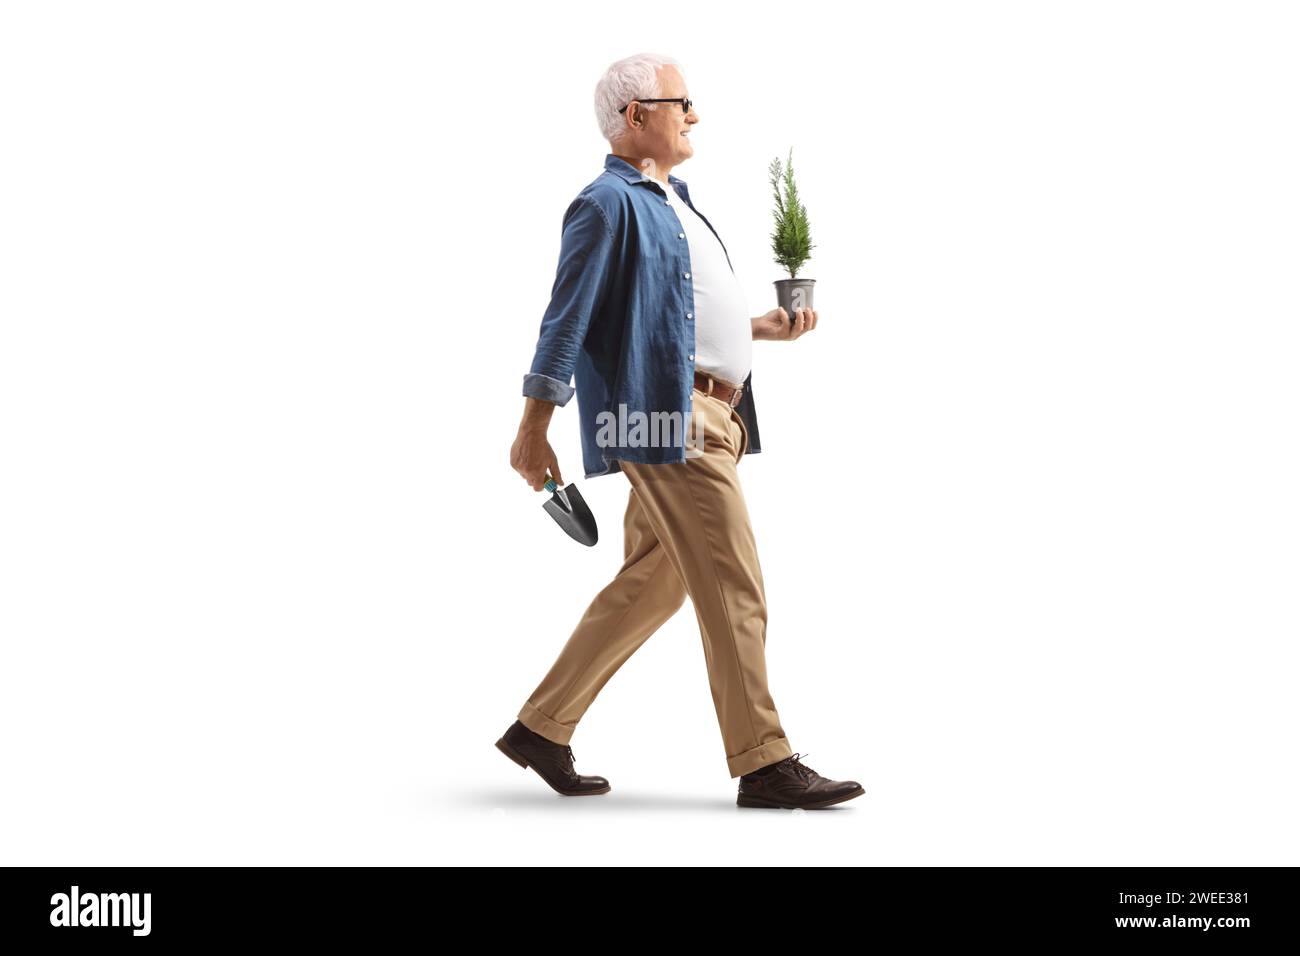 Foto a profilo completo di un uomo maturo che tiene in mano un piccolo albero sempreverde in un vaso e cammina isolato su sfondo bianco Foto Stock